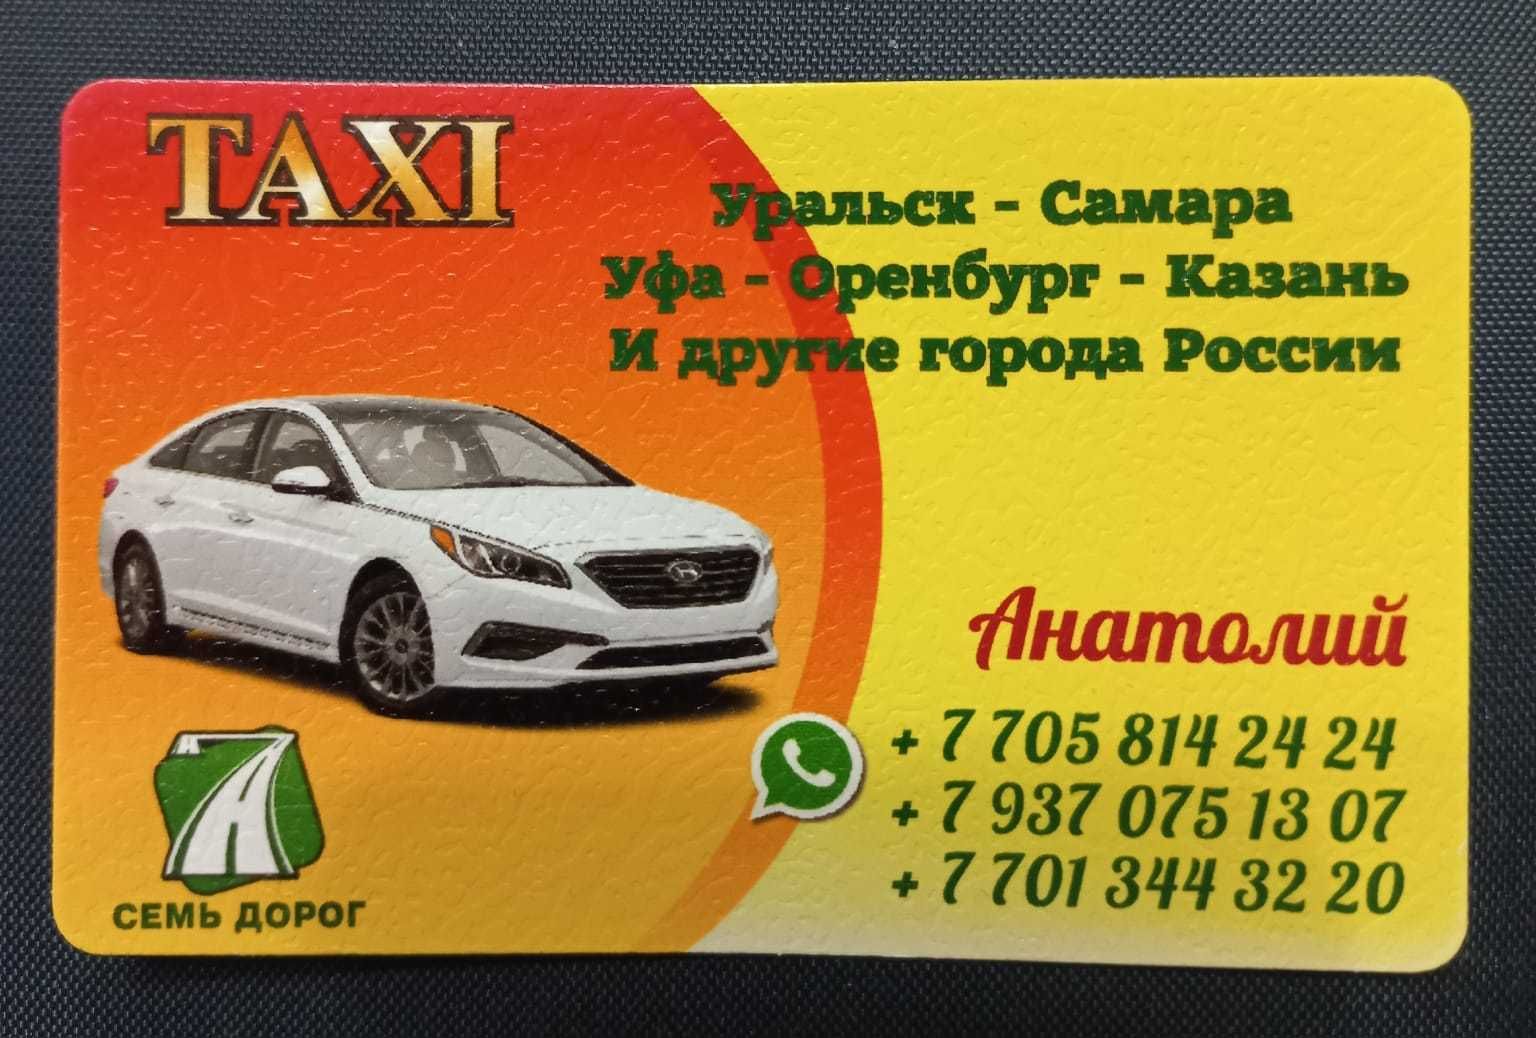 Такси Уральск - Самара - Уральск